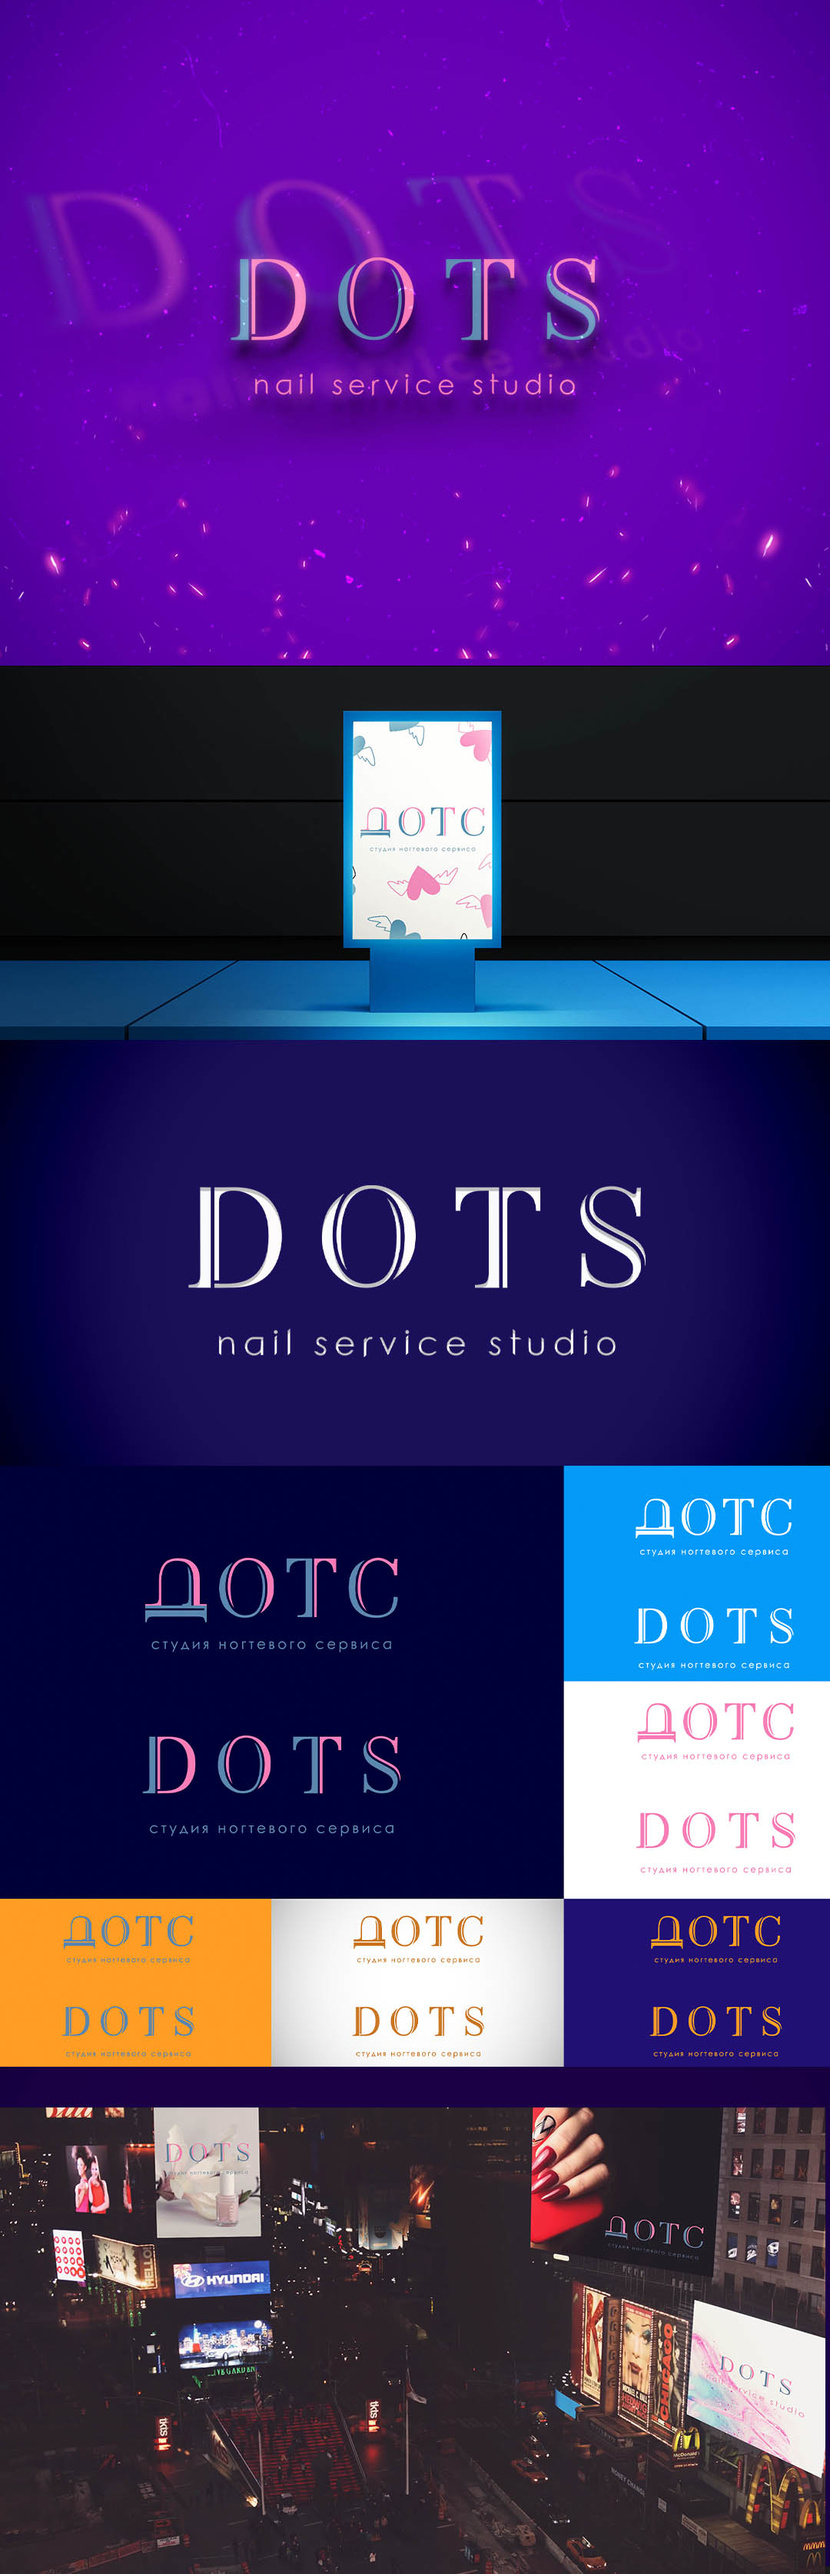 + - Разработка логотипа для студии ногтевого сервиса 'dots'